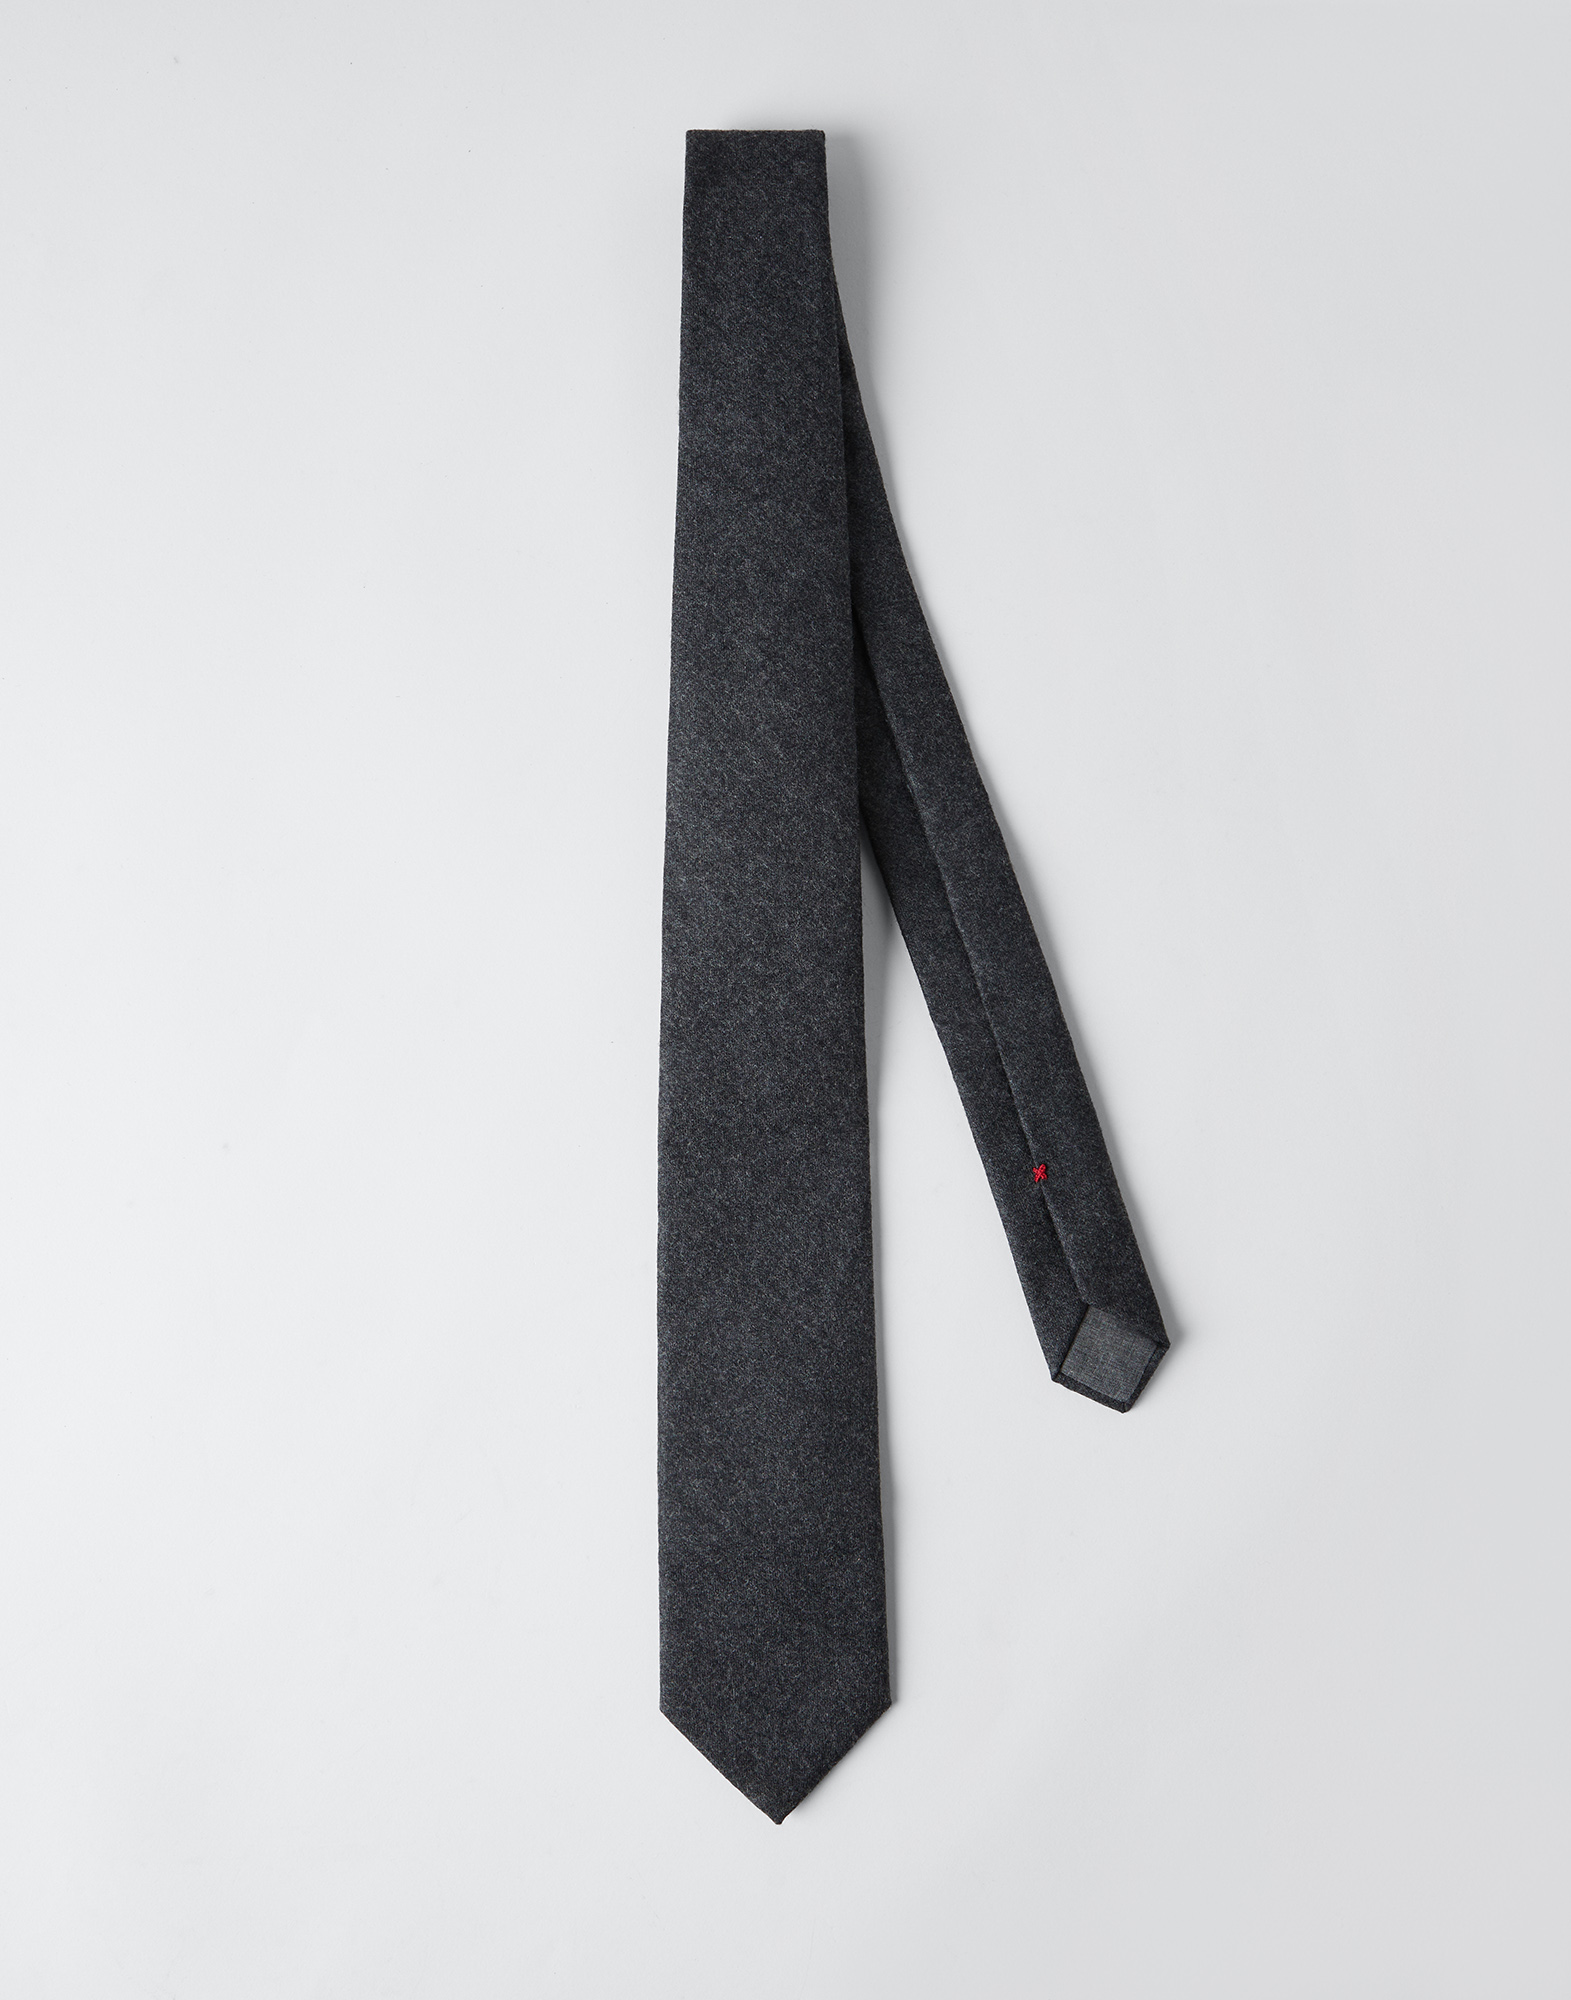 Flannel necktie